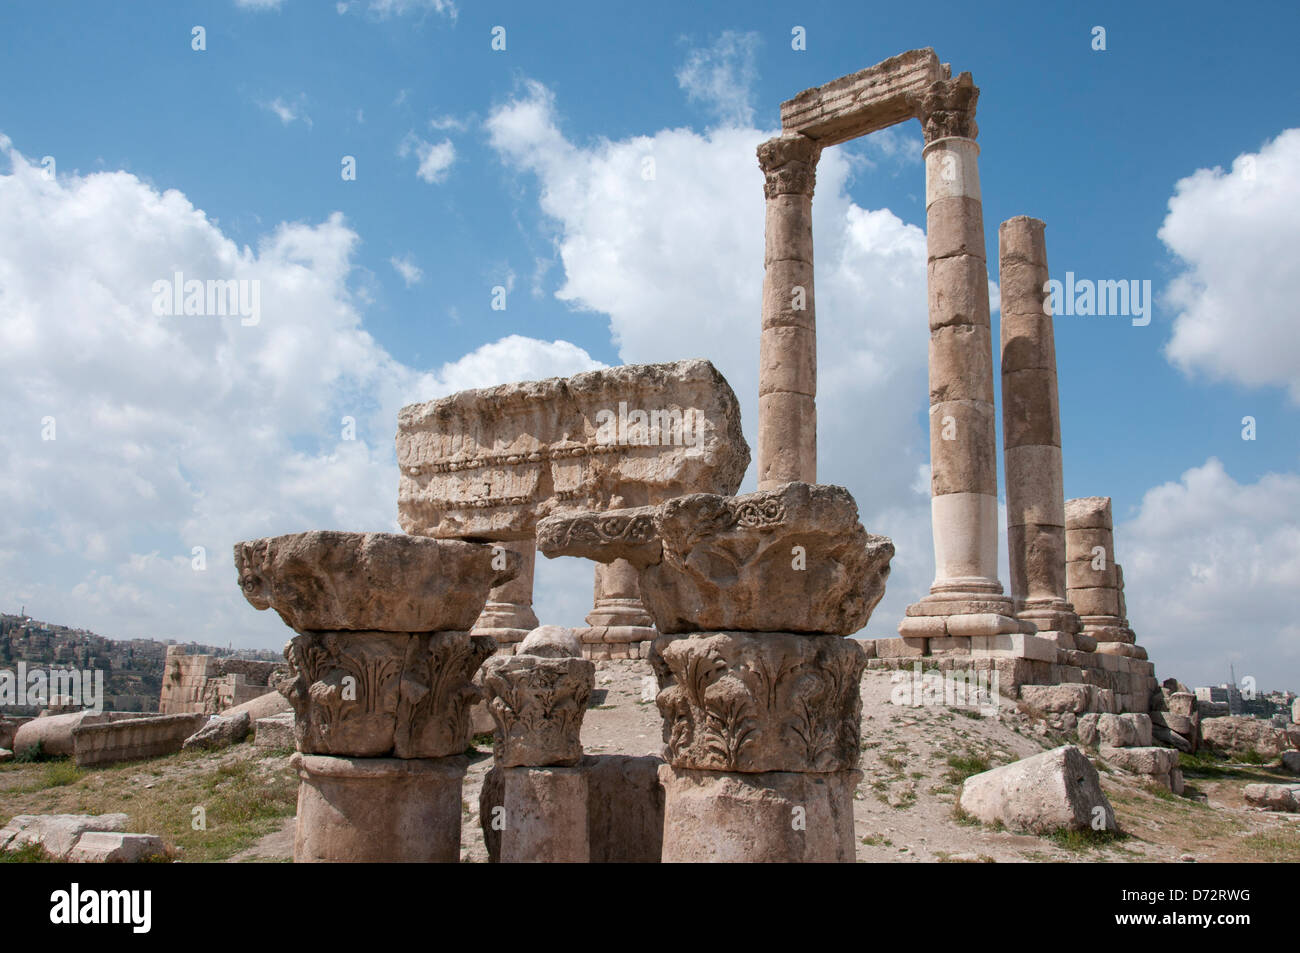 La Jordanie, Amman. La citadelle romaine. Vue touristique. Banque D'Images